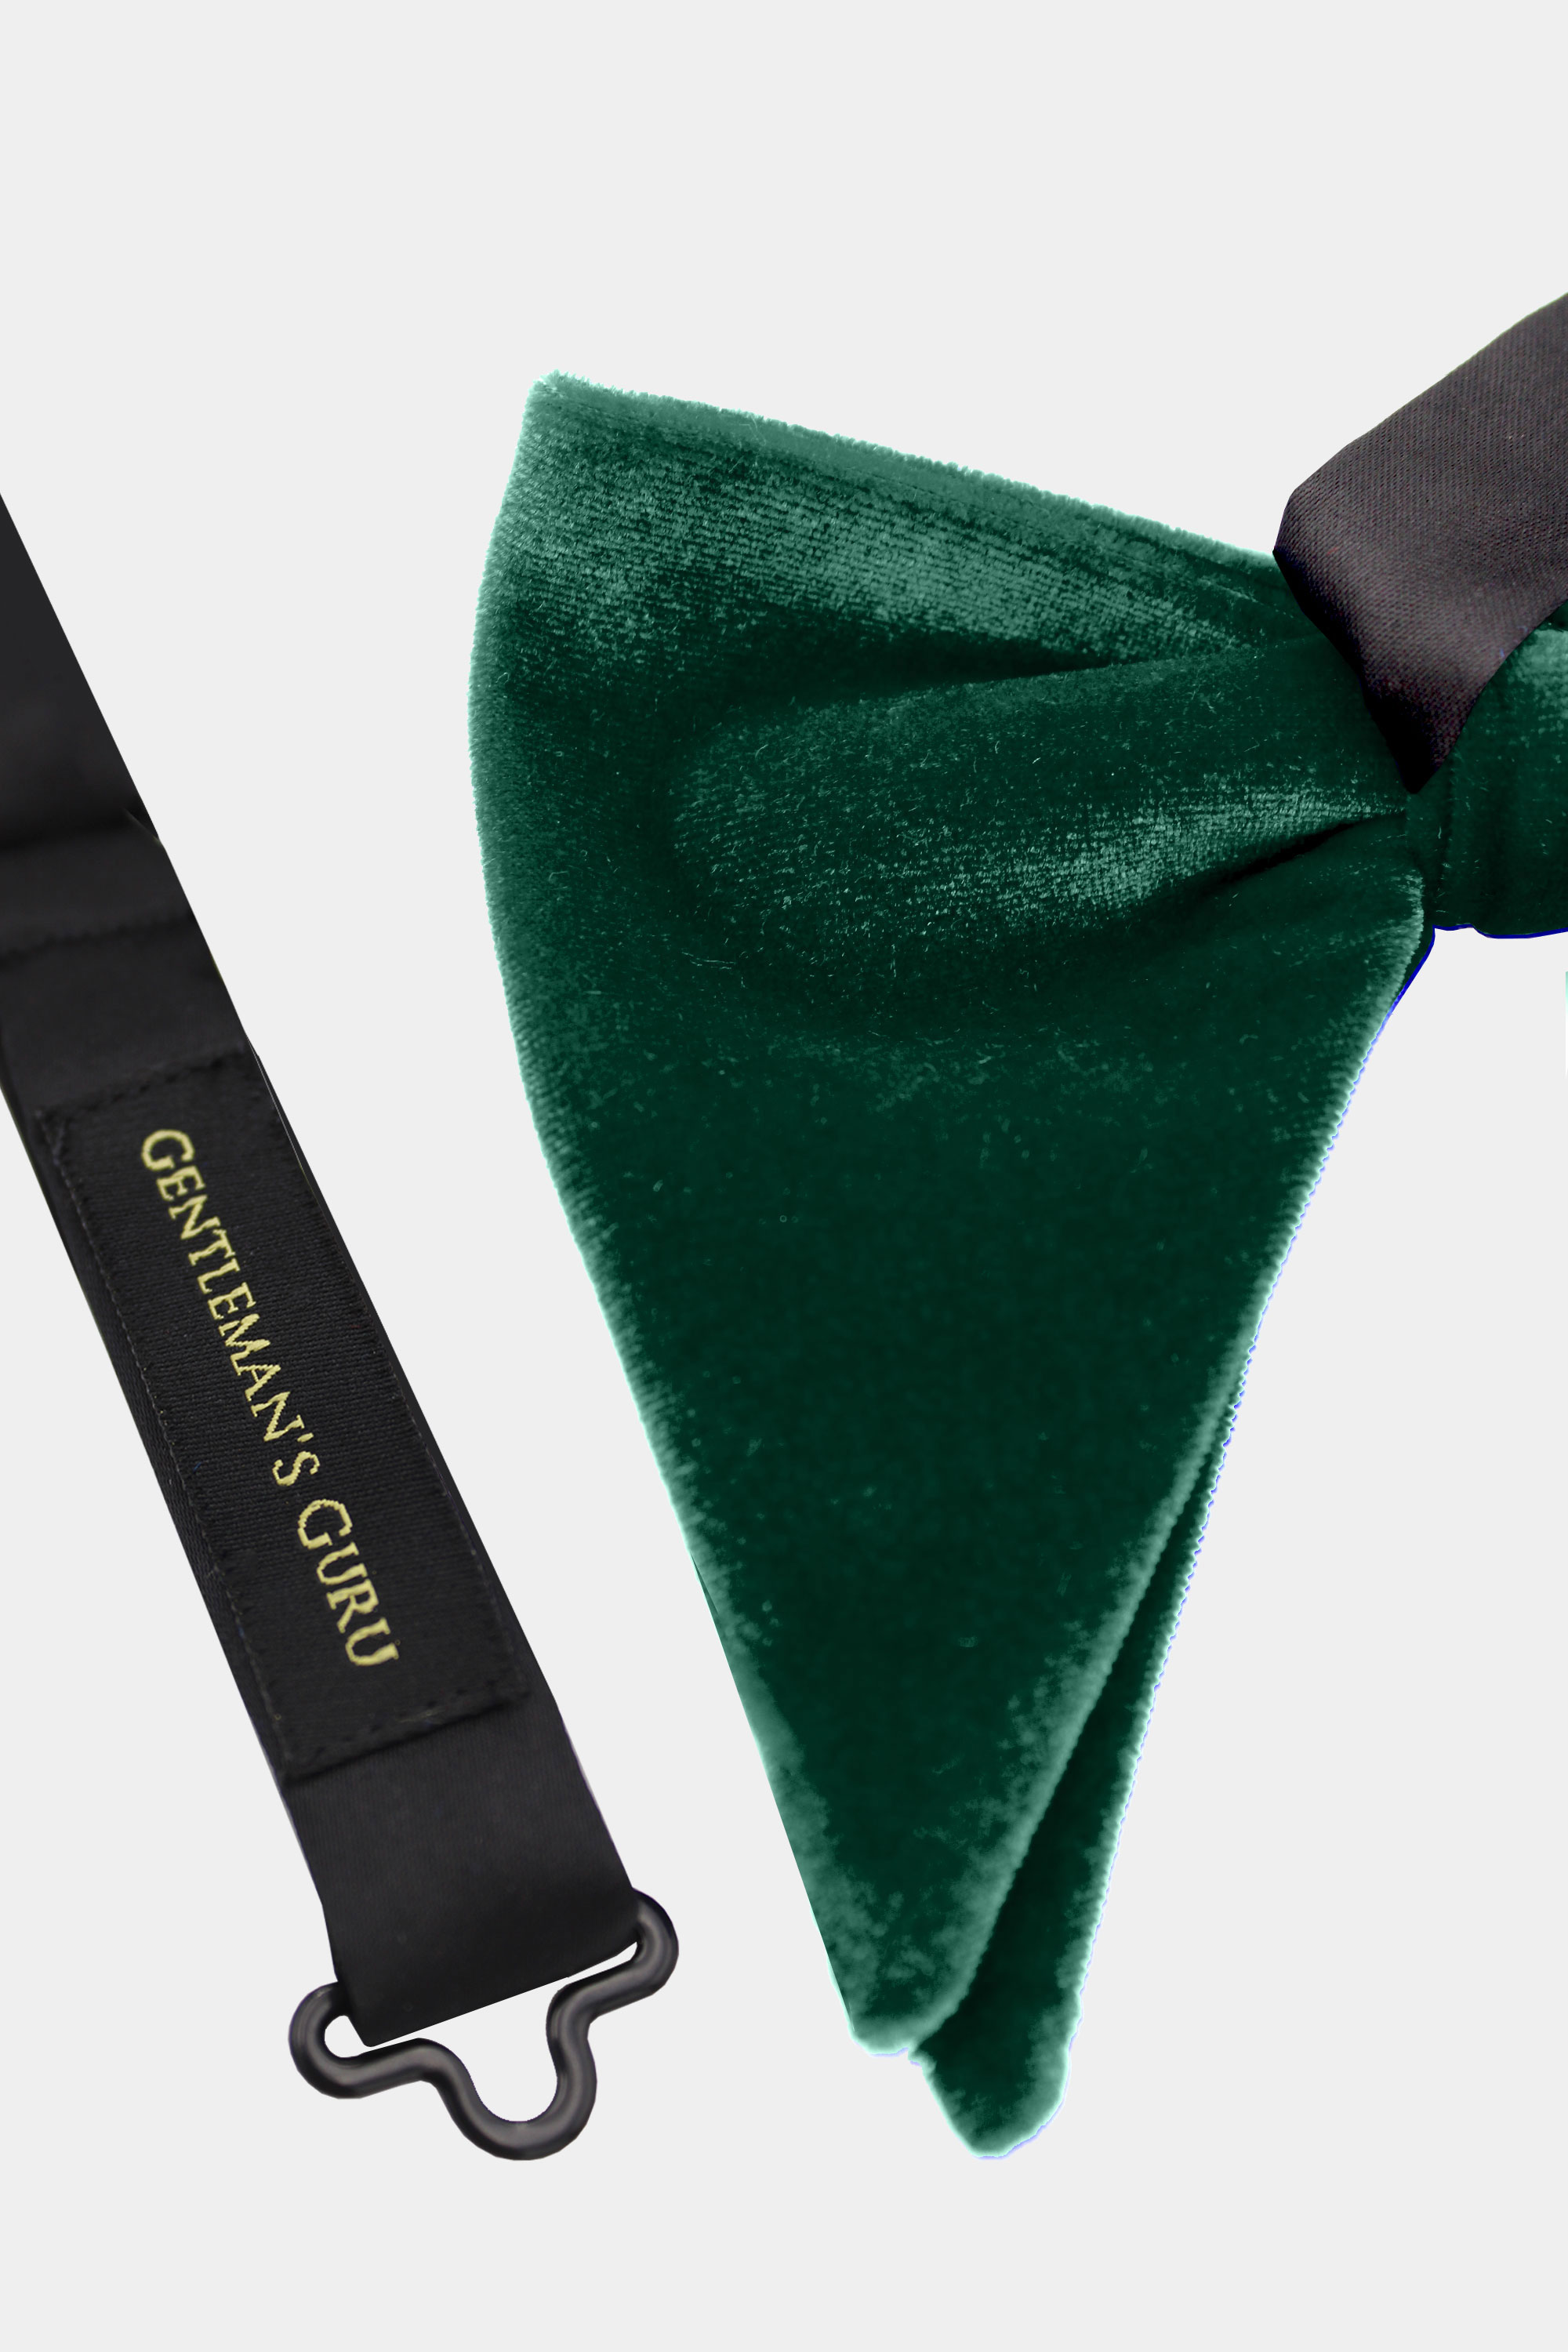 Emerald-Green-Velvet-Bow-Tie-from-Gentlemansguru.com